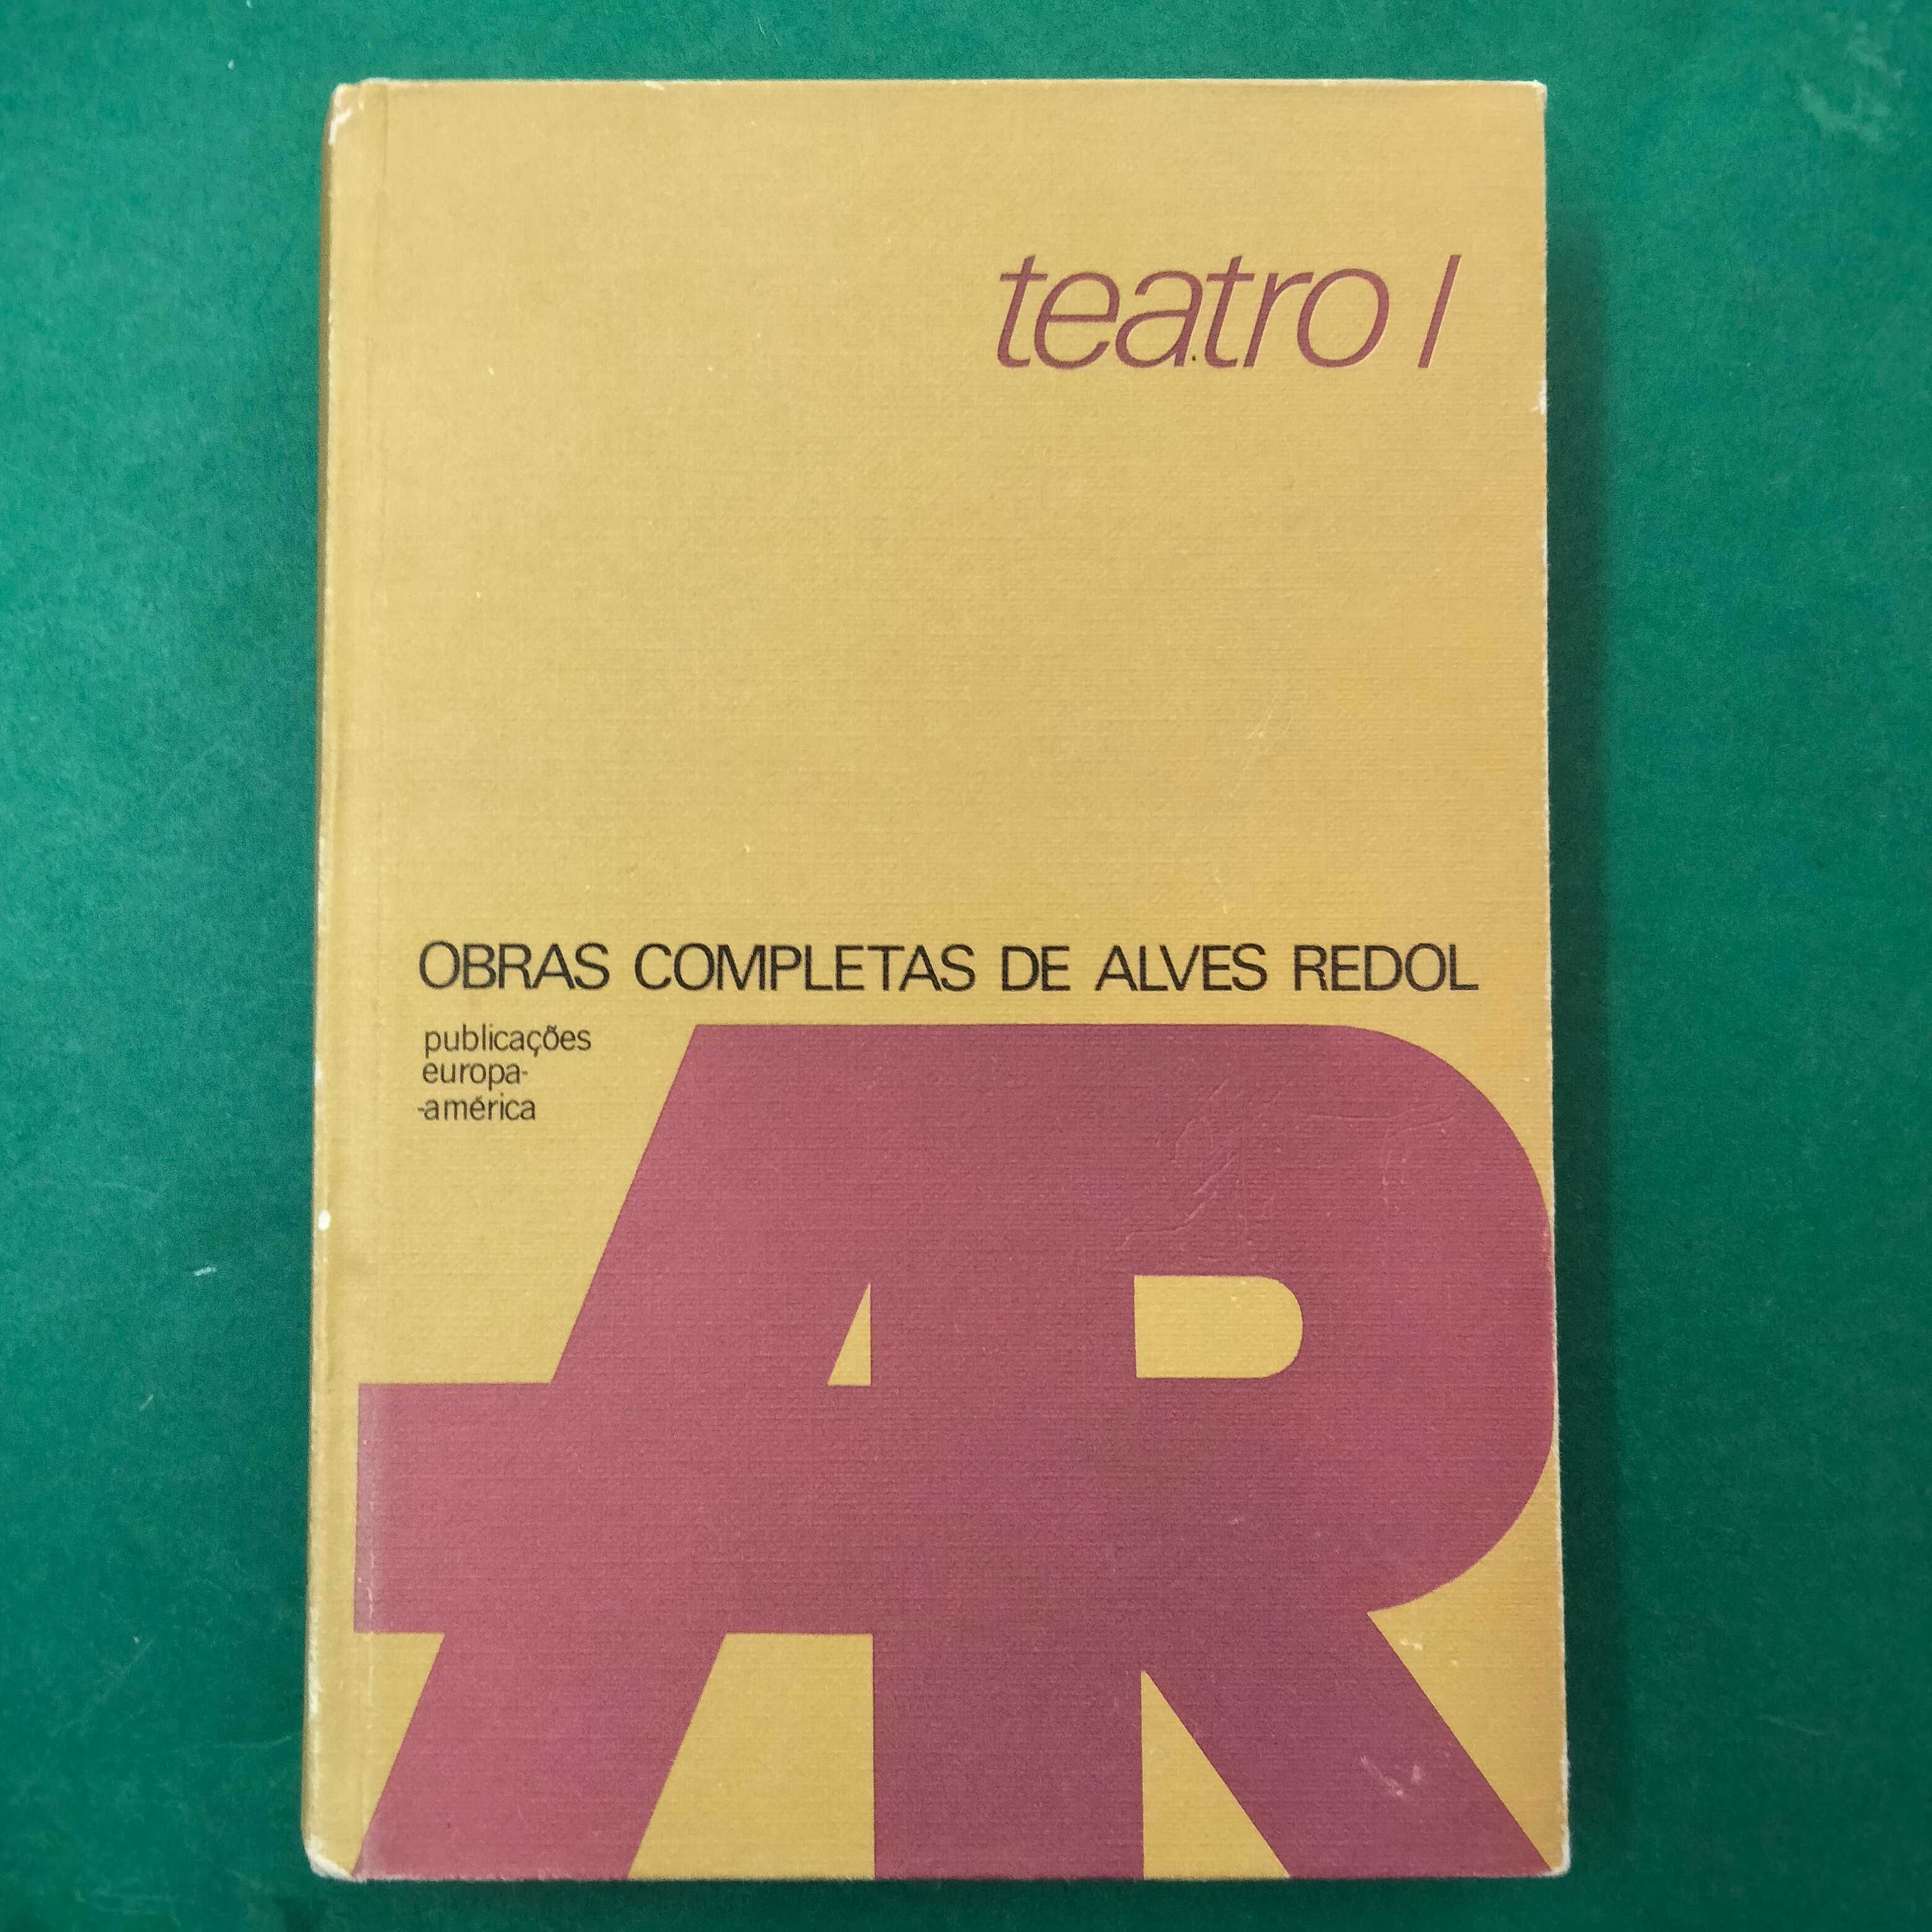 Teatro I - Alves Redol